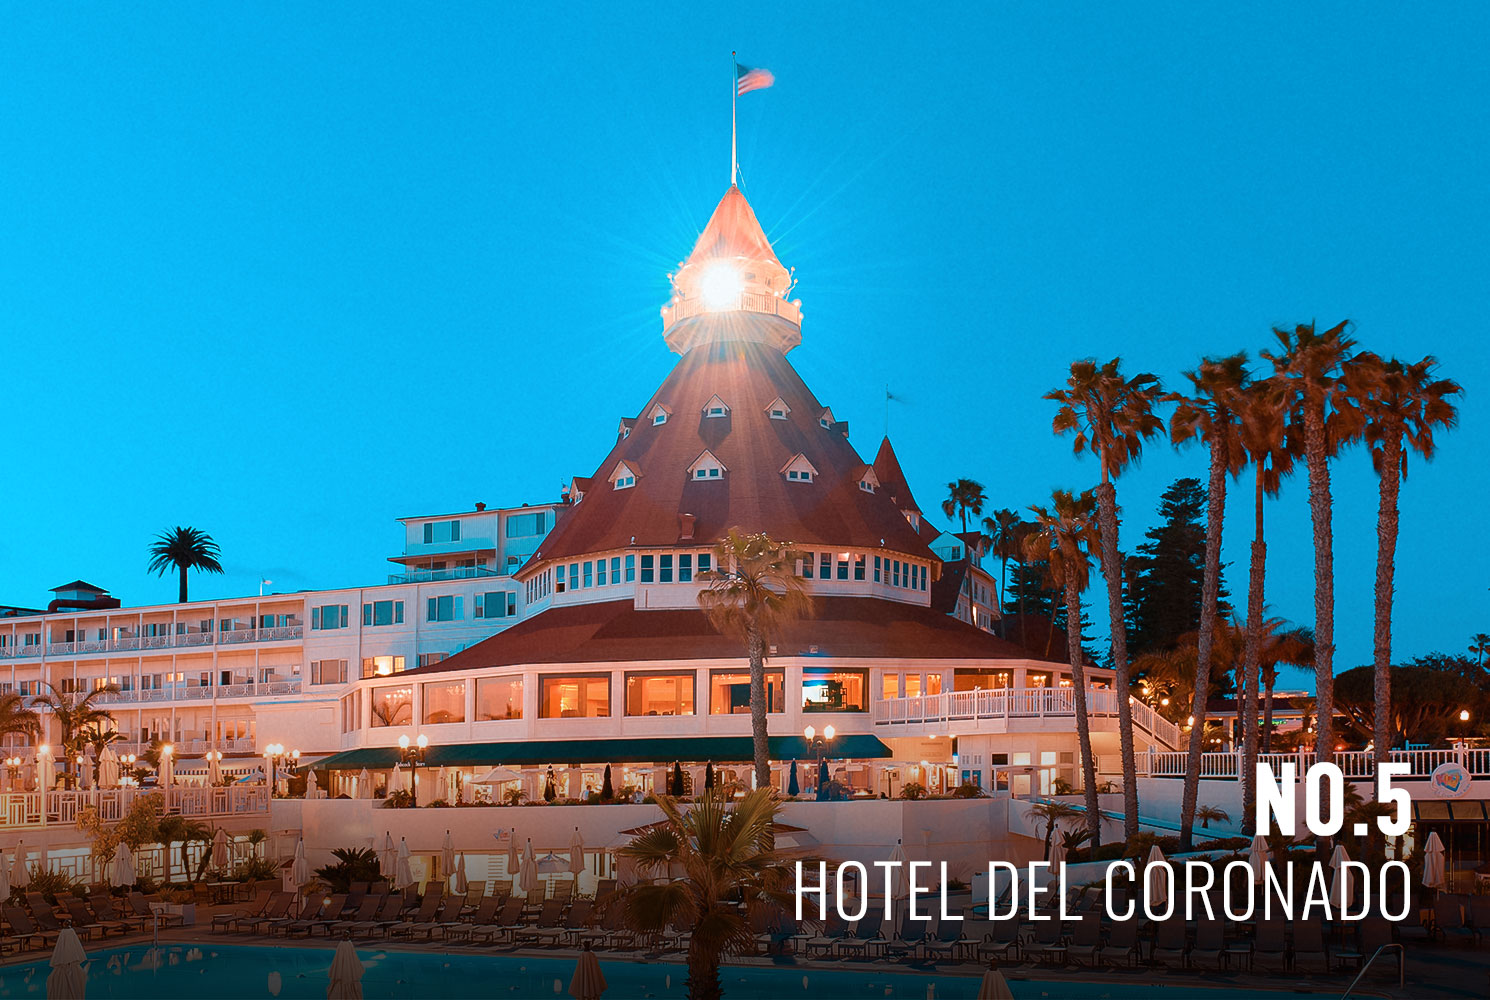 Hotel de Coronado